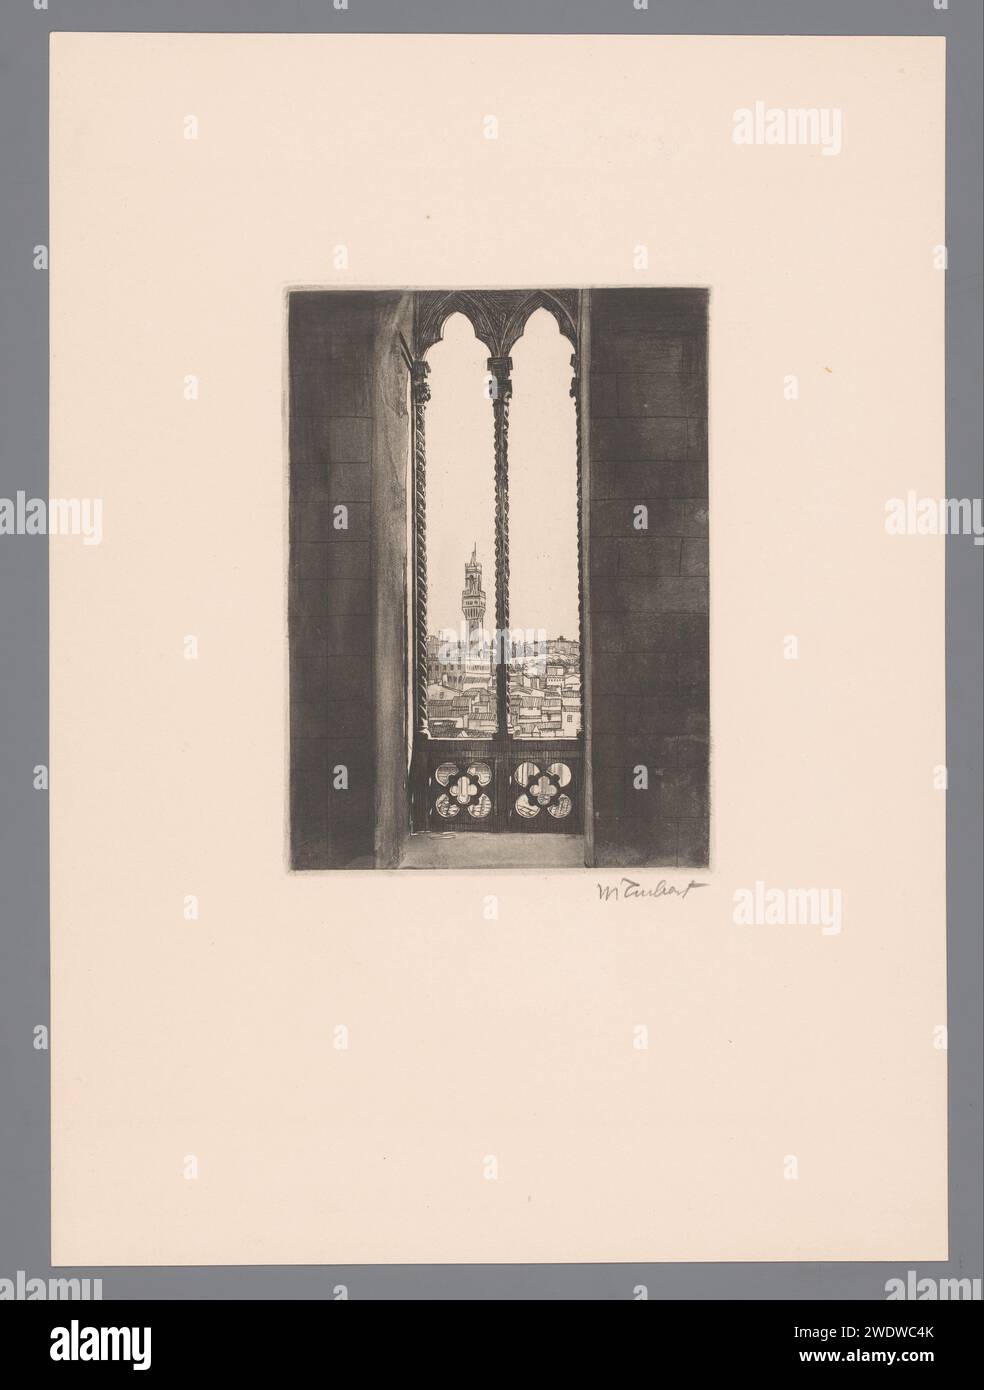 Blick auf Florenz mit dem Palazzo Vecchio, möglicherweise von Orsanmichele, Guglielmo Taubert, 1886 - 1927 Druck Florenz Papier ätzend Stadt-Ansicht im Allgemeinen; 'Veduta' Palazzo Vecchio. Orsanmichele. Florenz Stockfoto